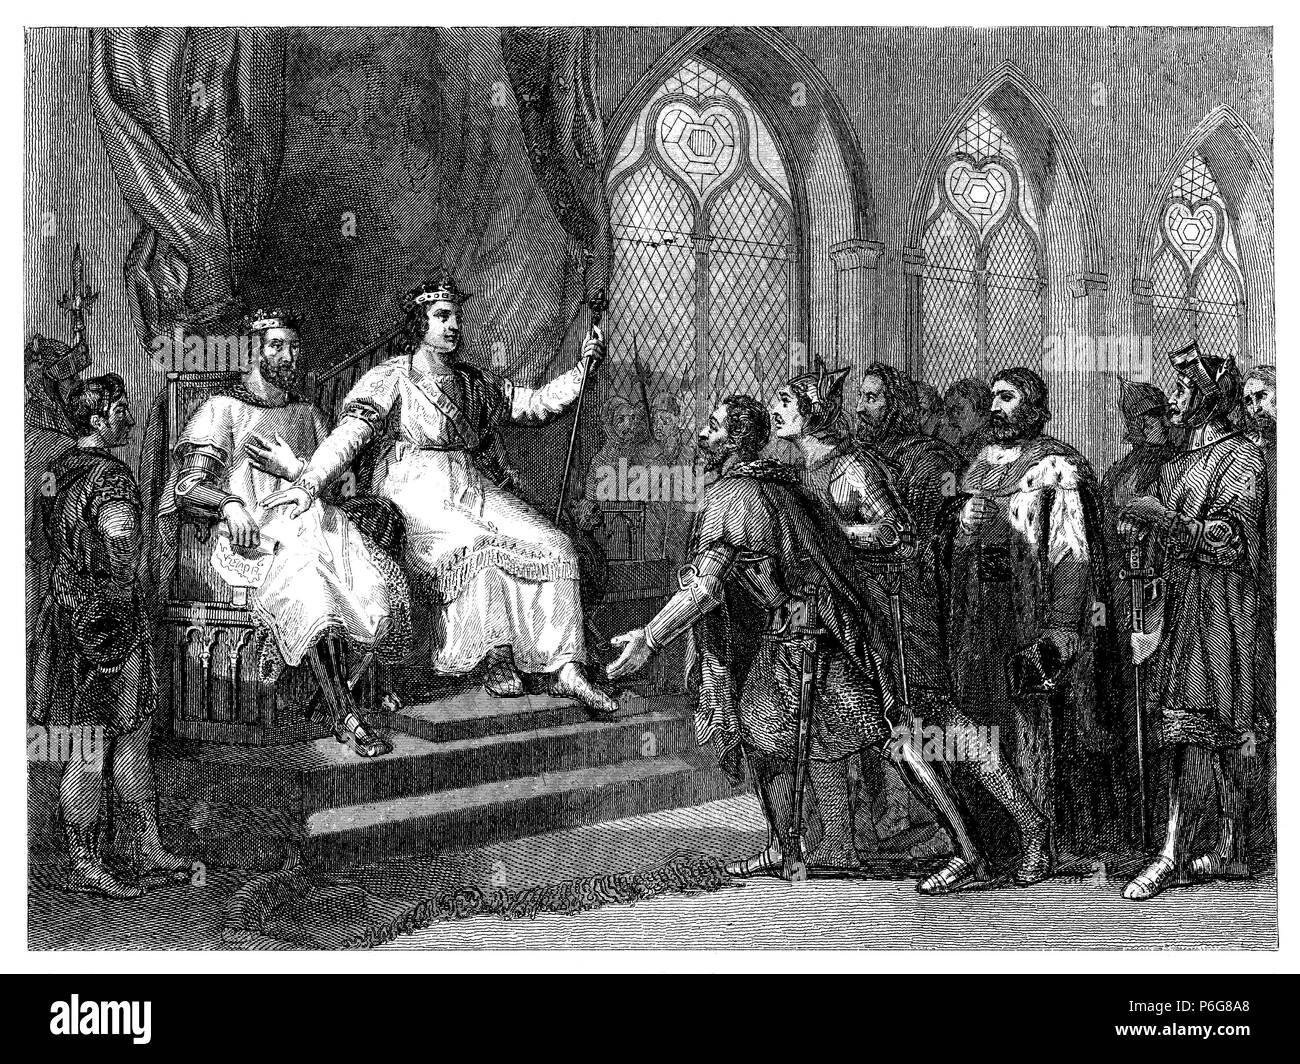 Francia. San Luis IX (1214-1270), rey de Francia recibiendo al rey de Inglaterra y sus barones en enero de 1264. Grabado de 1853. Stock Photo